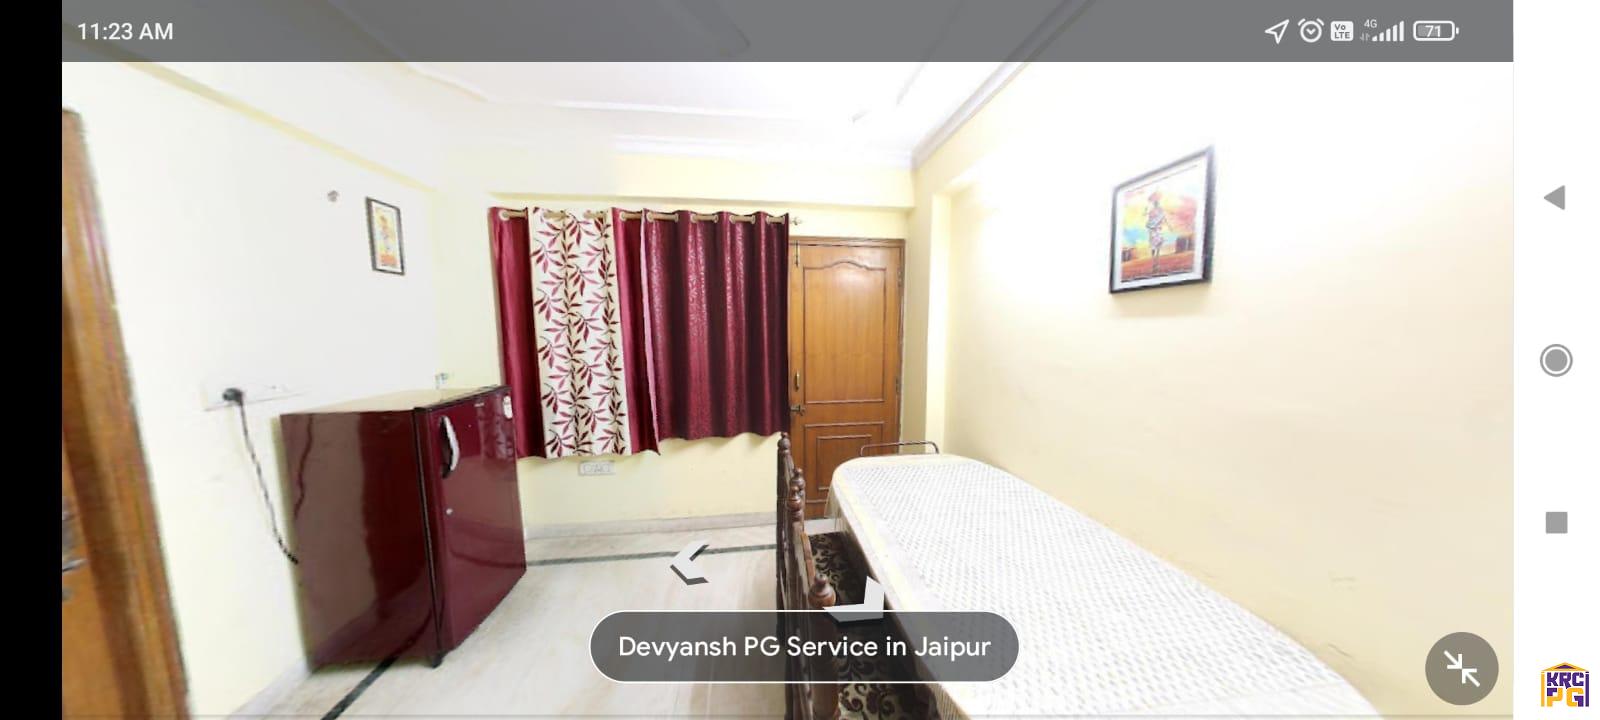 Devyansh-pg-service-in-jaipur